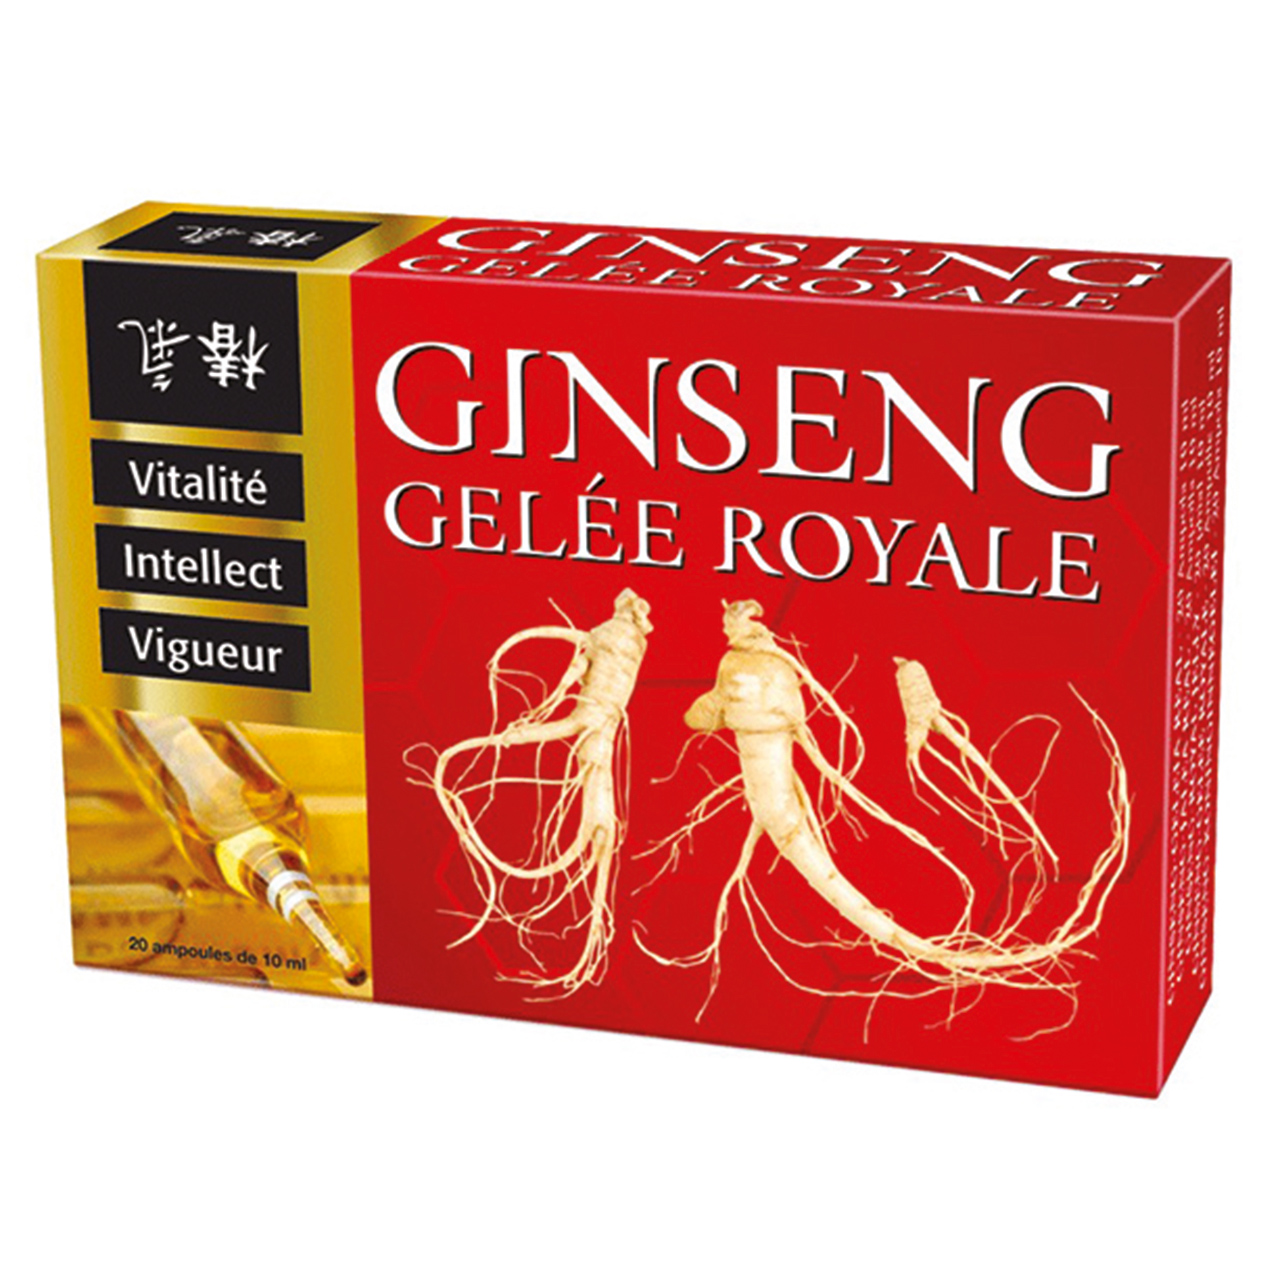 Royal Jelly and Ginseng Vials